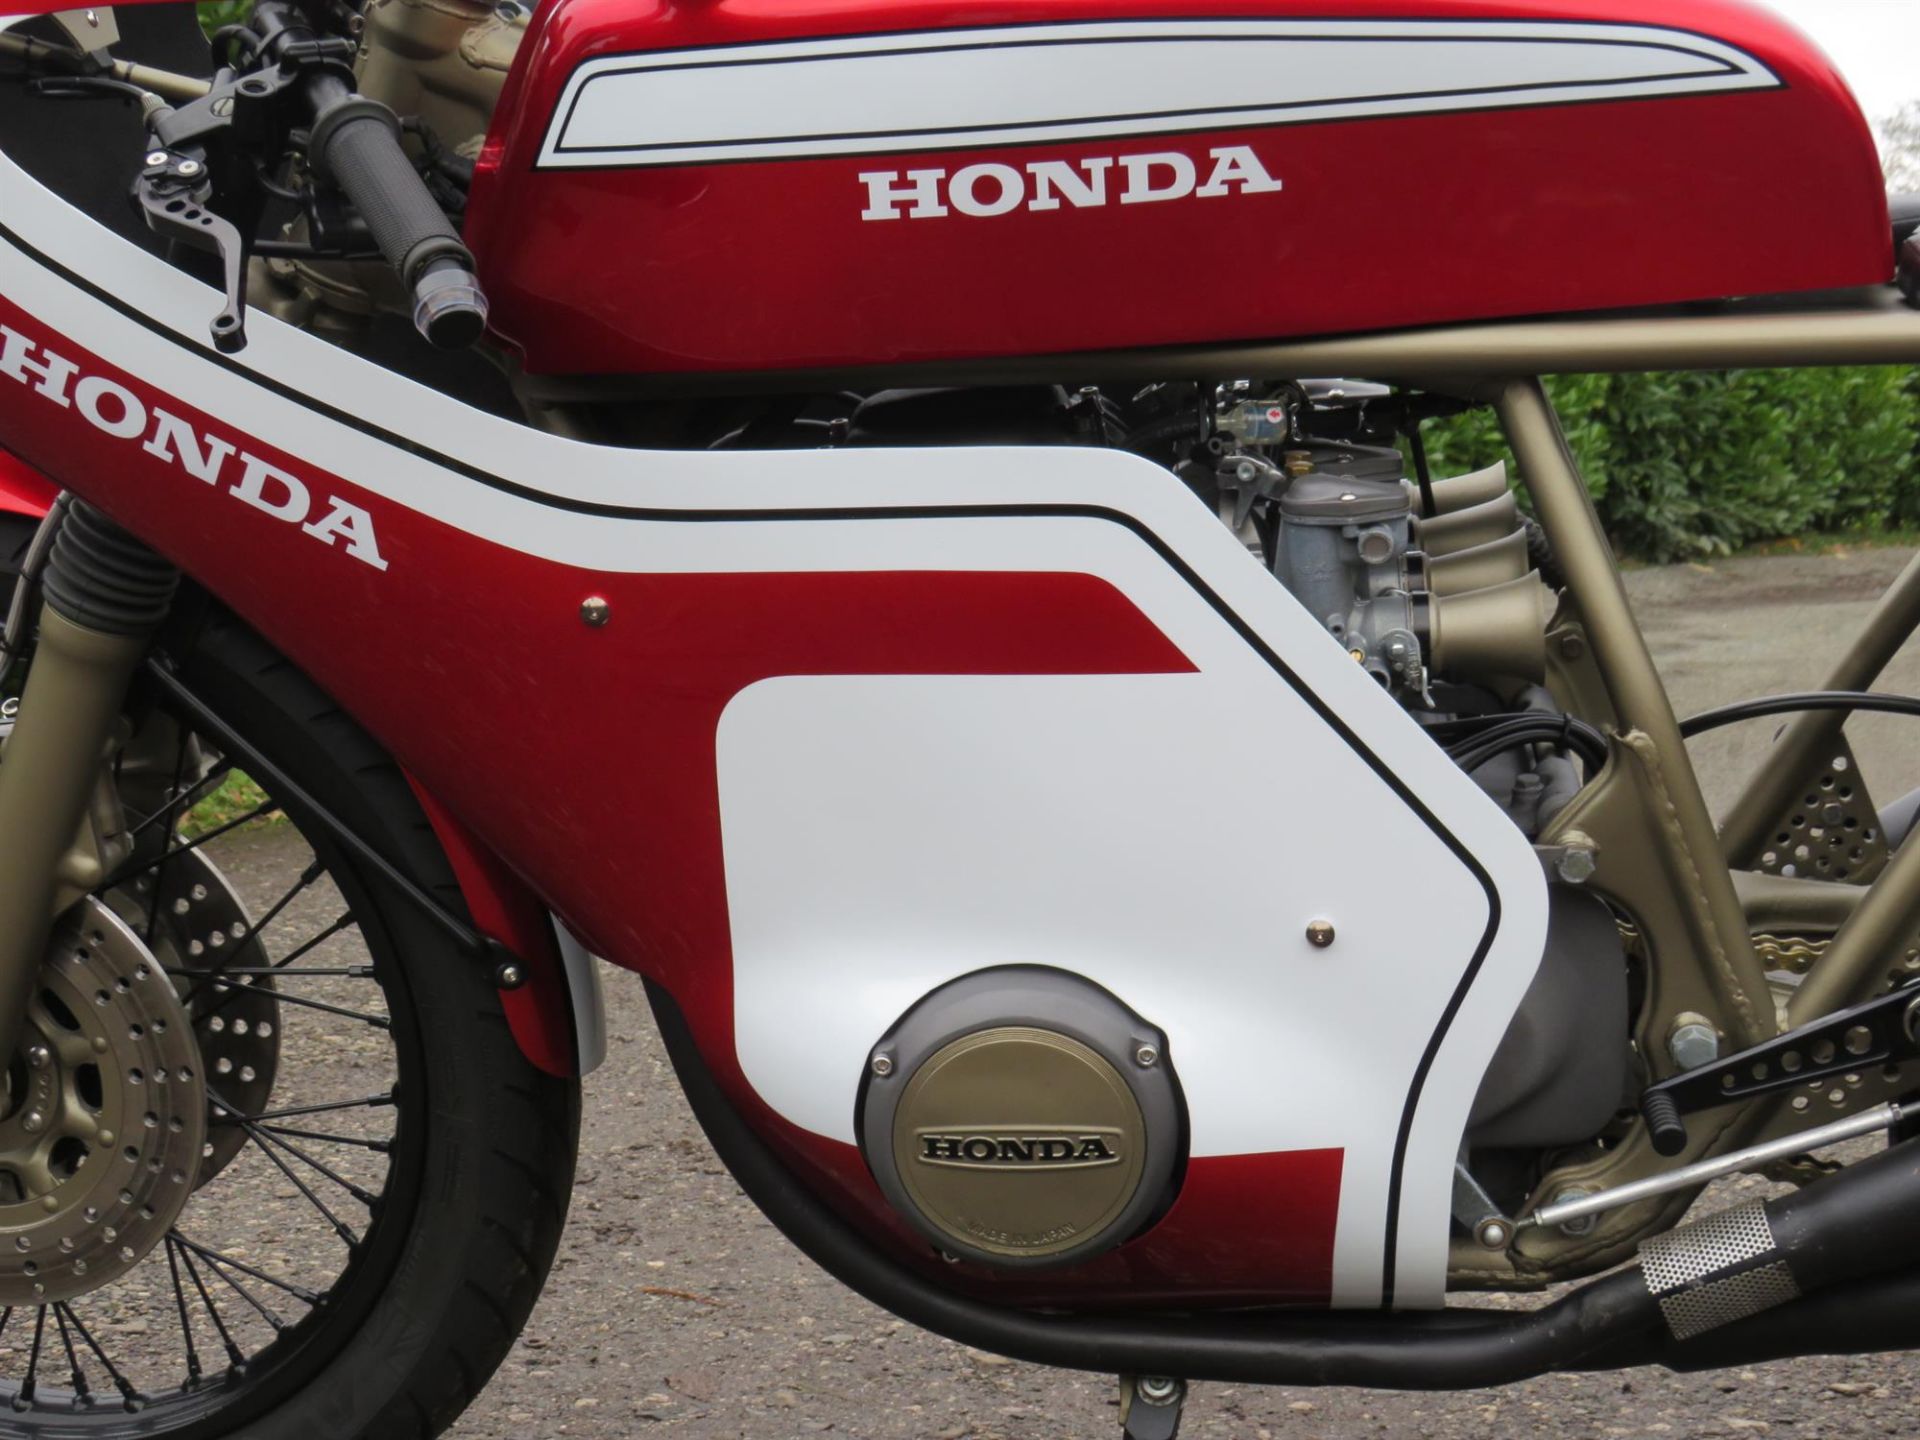 1979 Honda CB550 'CR750' Replica 544cc - Image 4 of 10